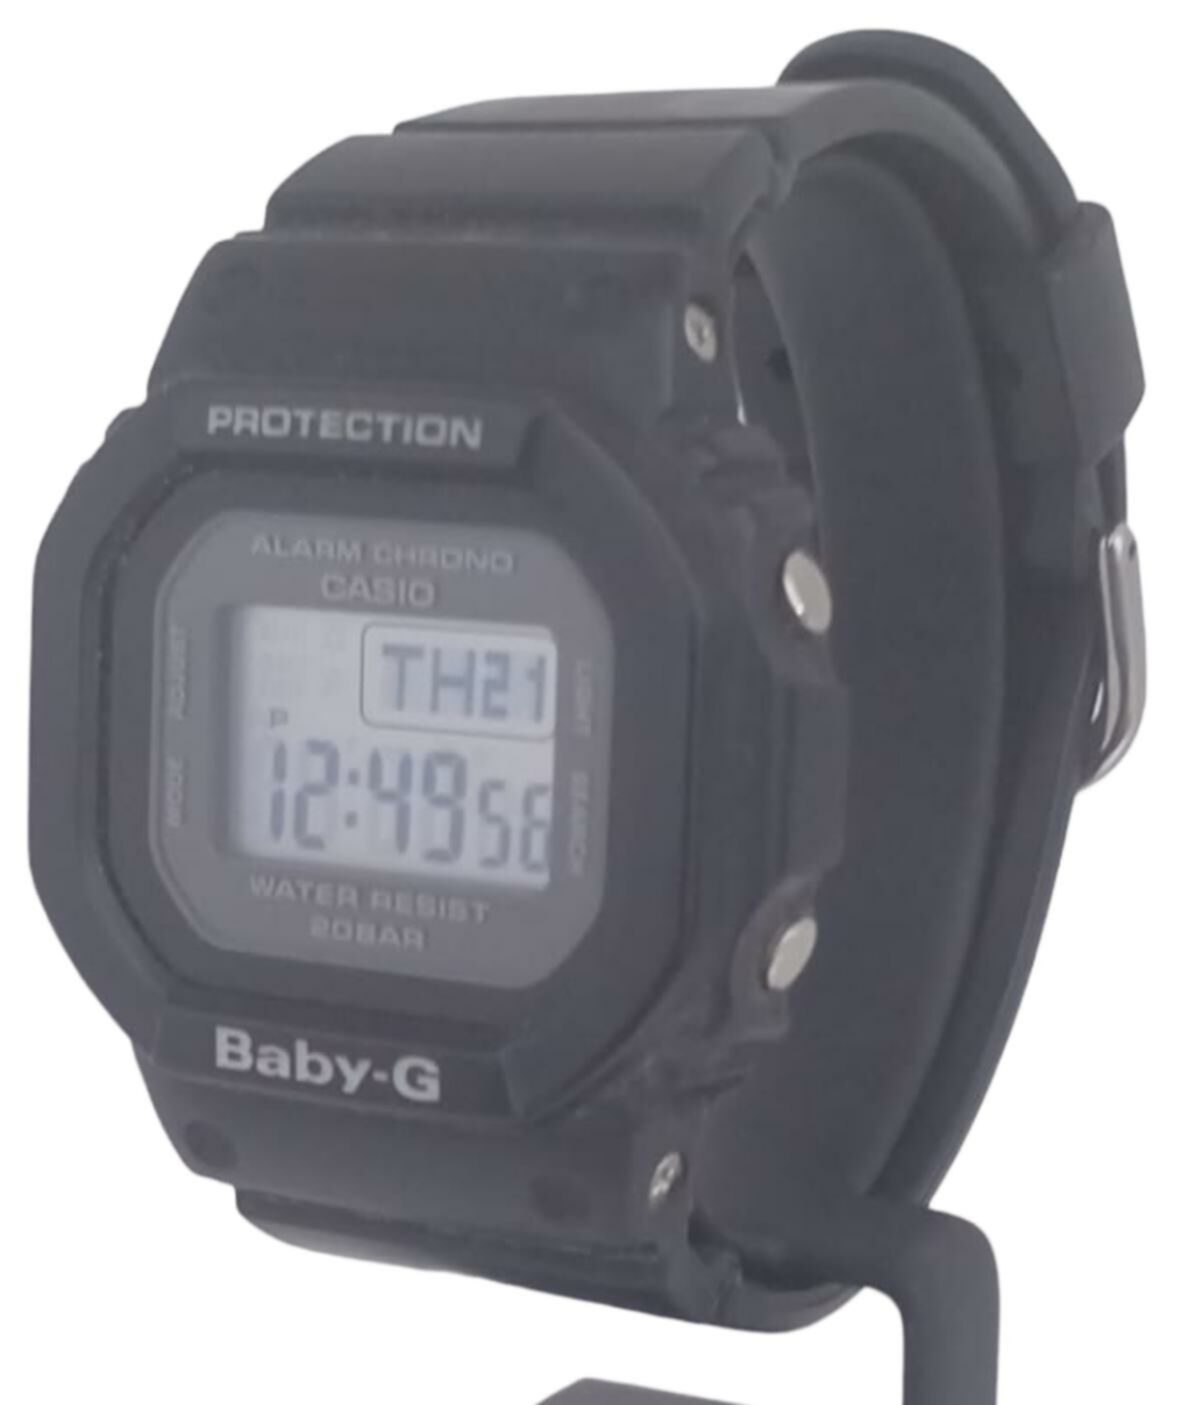 G-Shock Baby - G BGD-560-1